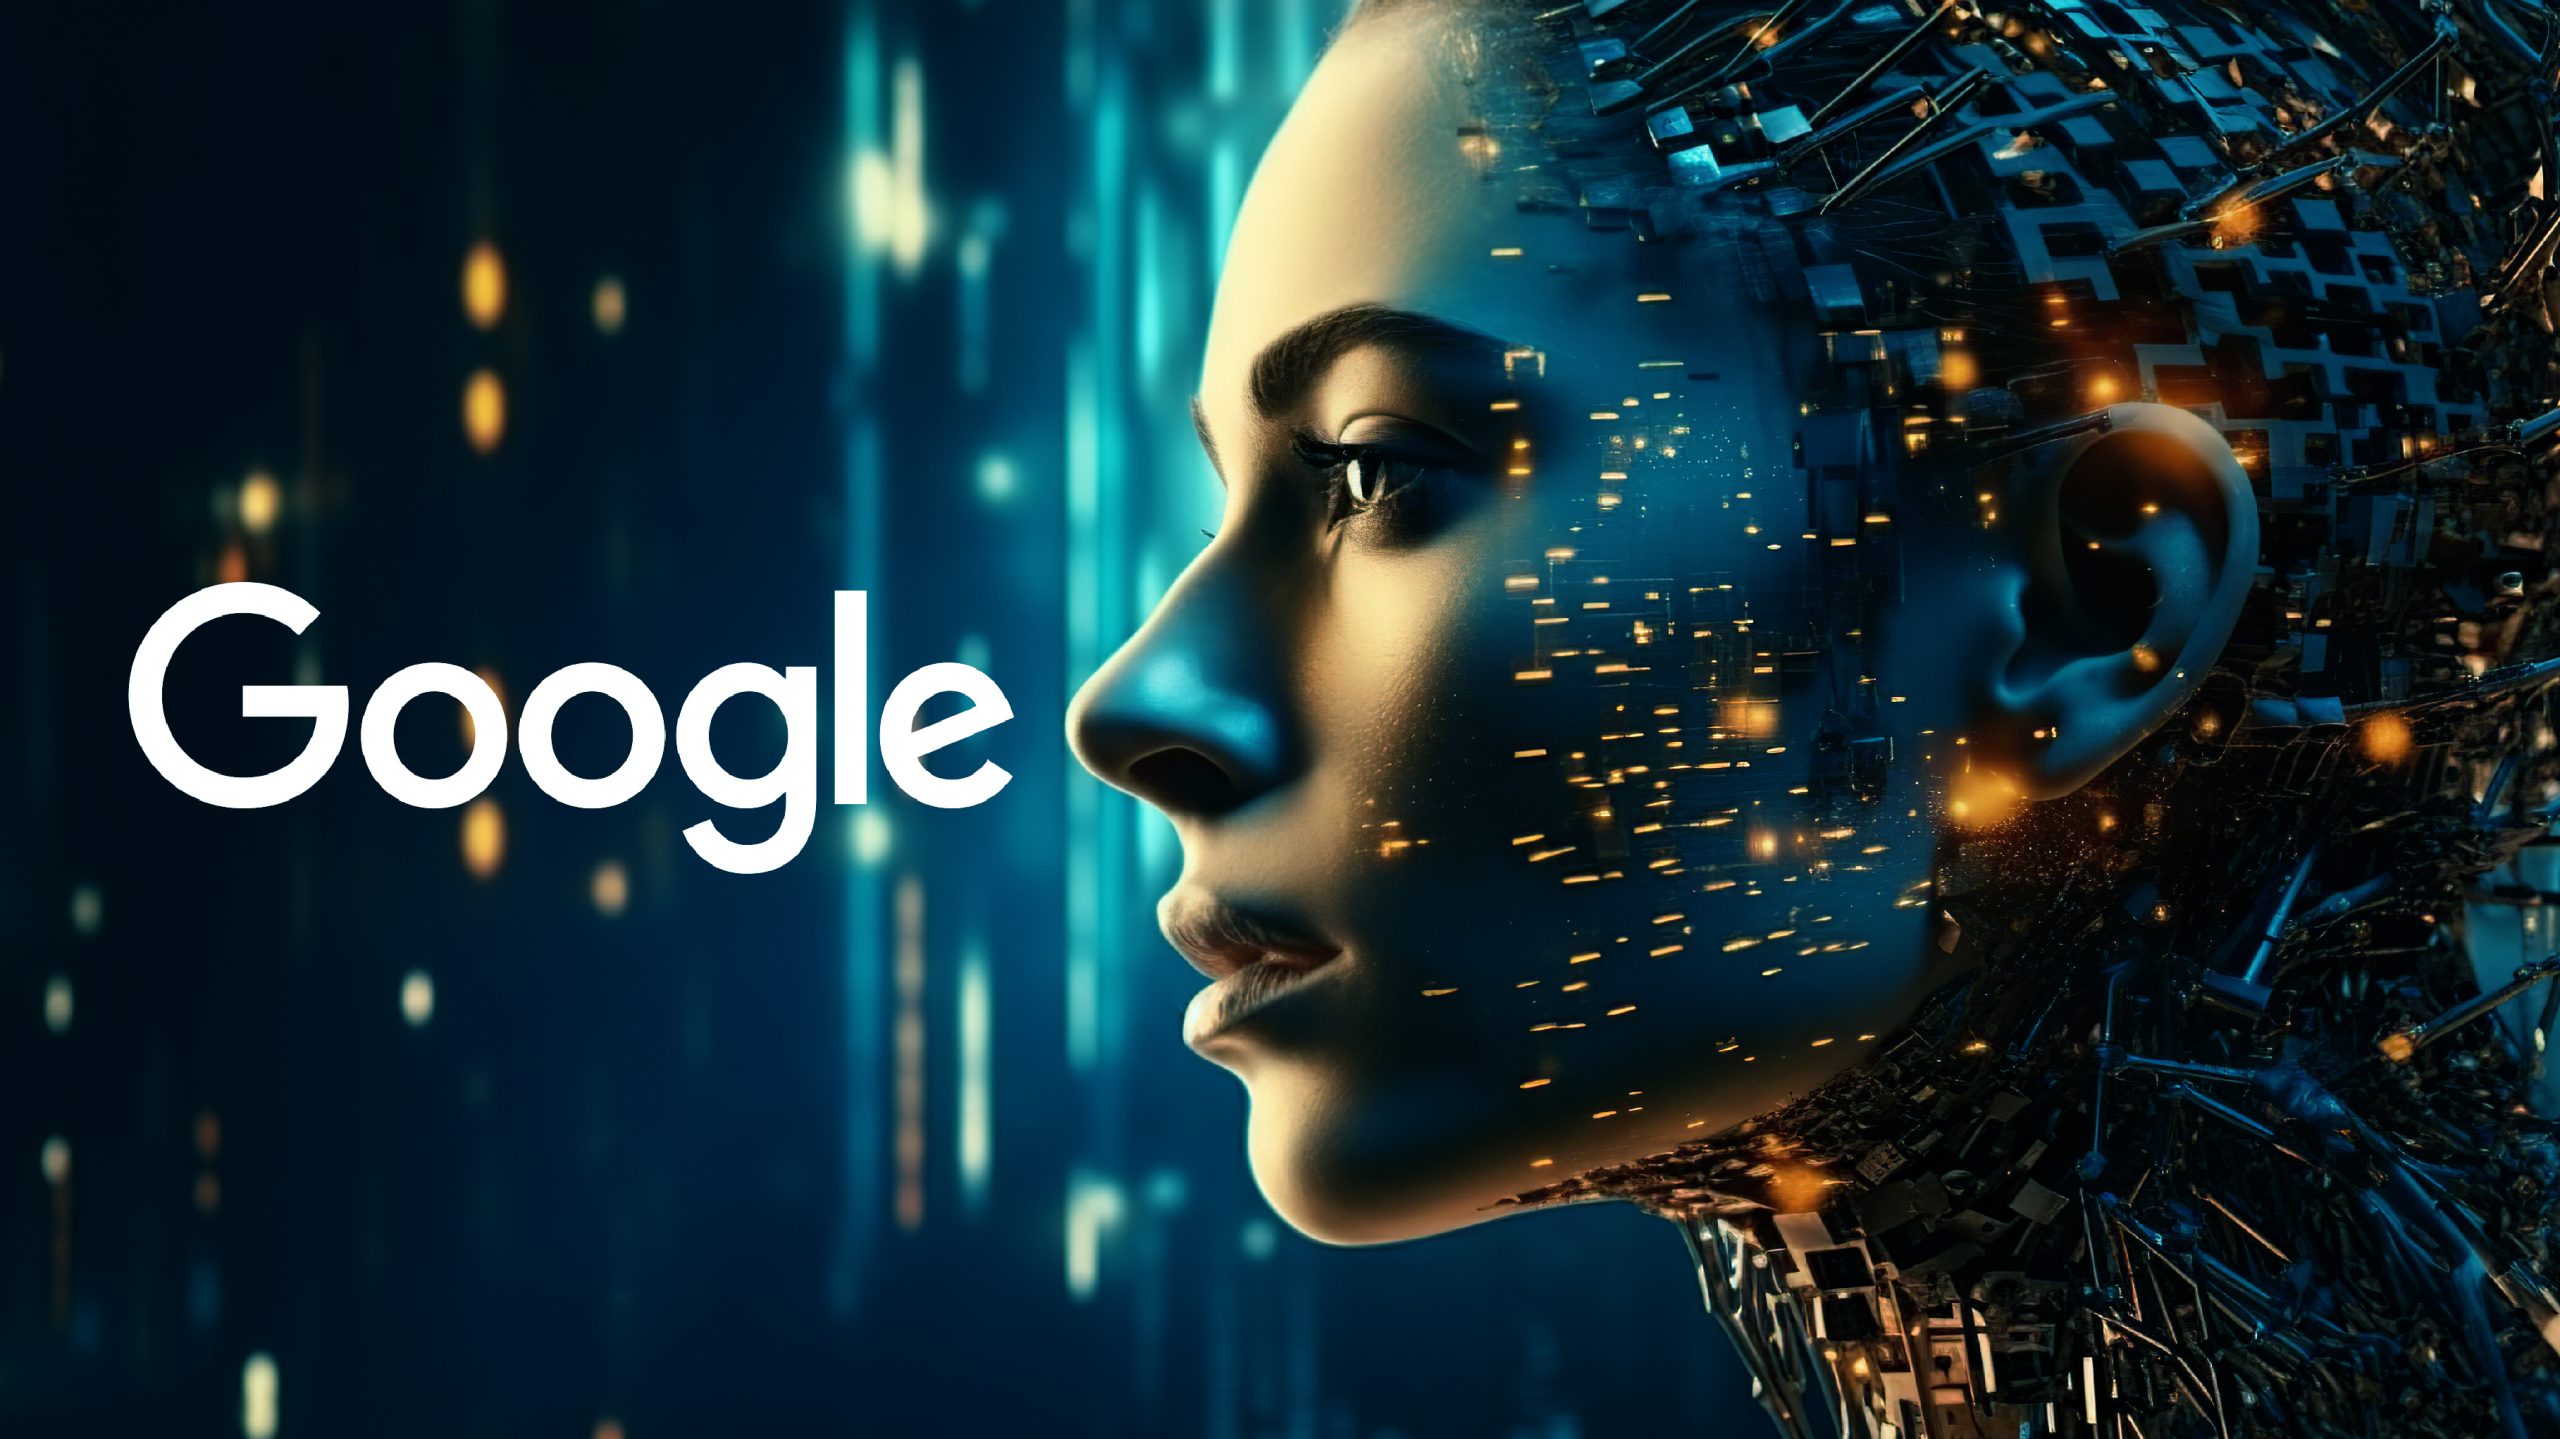 Google planea cobrar por la búsqueda mejorada con IA: aquí están los detalles